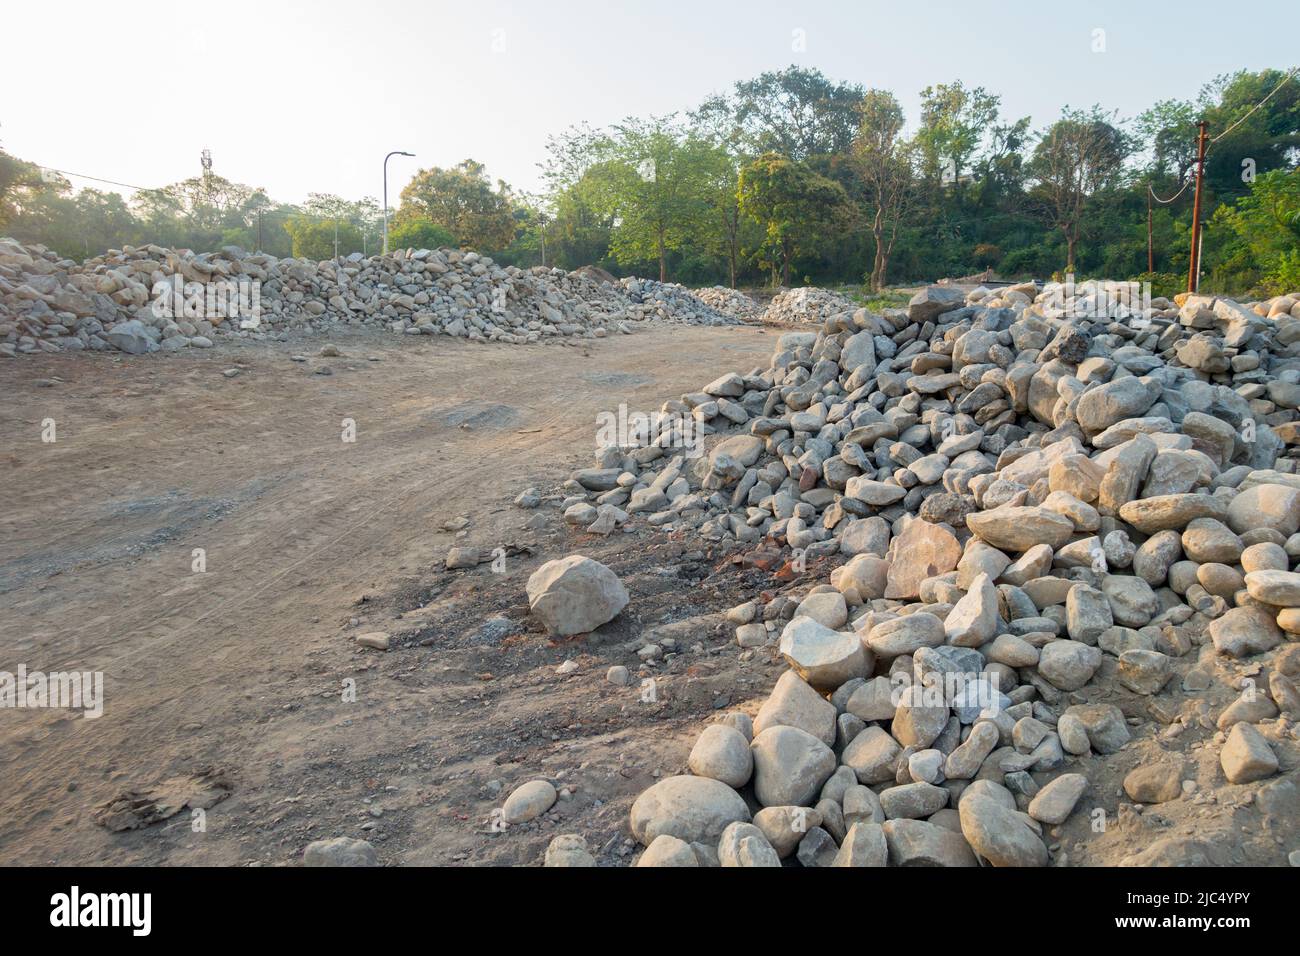 Une pile de pierre le long de la route pour construire un mur de retenue de pierre pour empêcher le glissement de terrain et la coupe. Uttarakhand Inde. Banque D'Images